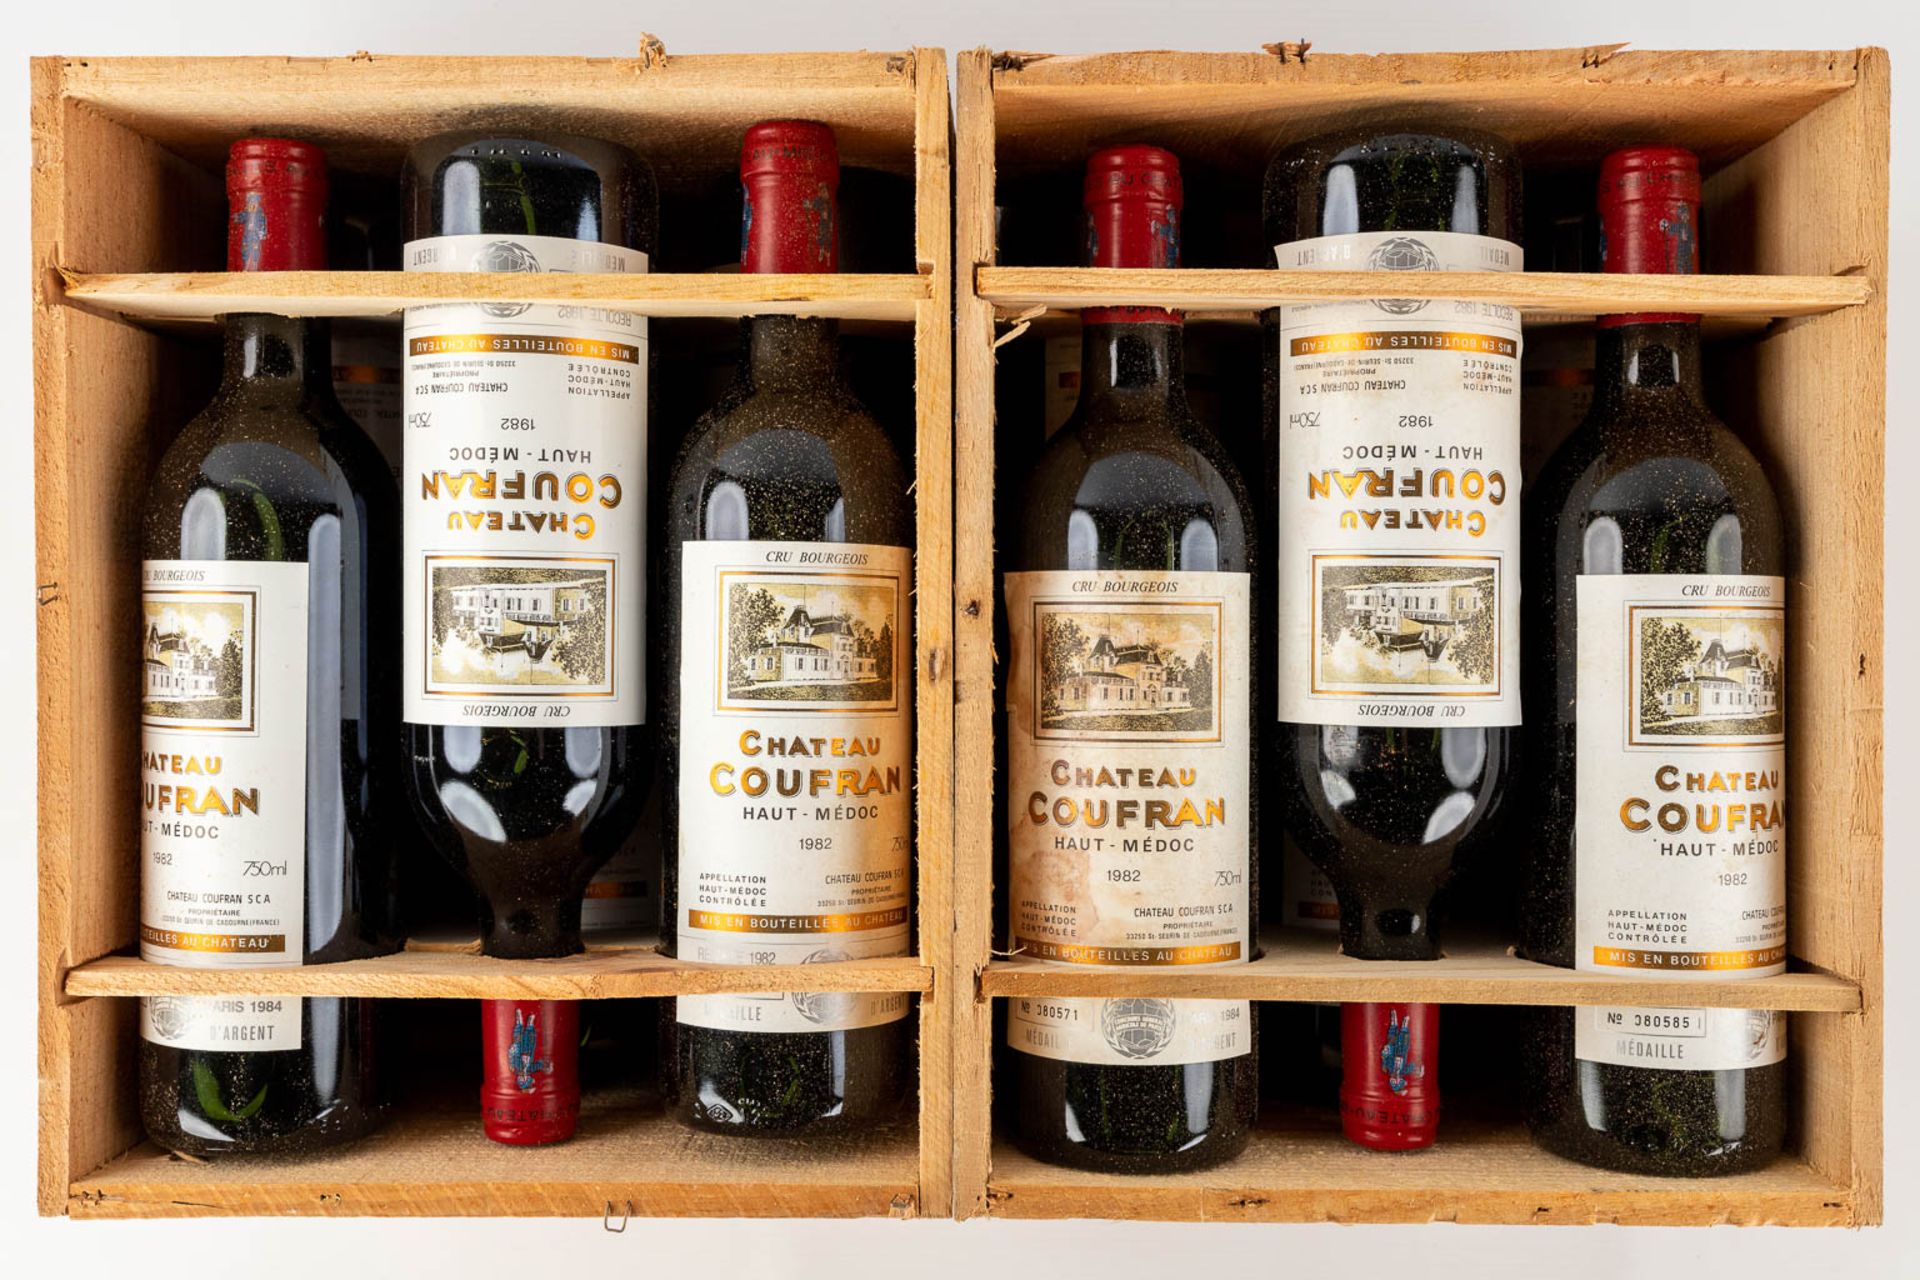 Château Coufran Haut Médoc, 1982, 12 bottles (2 chests) - Bild 2 aus 13